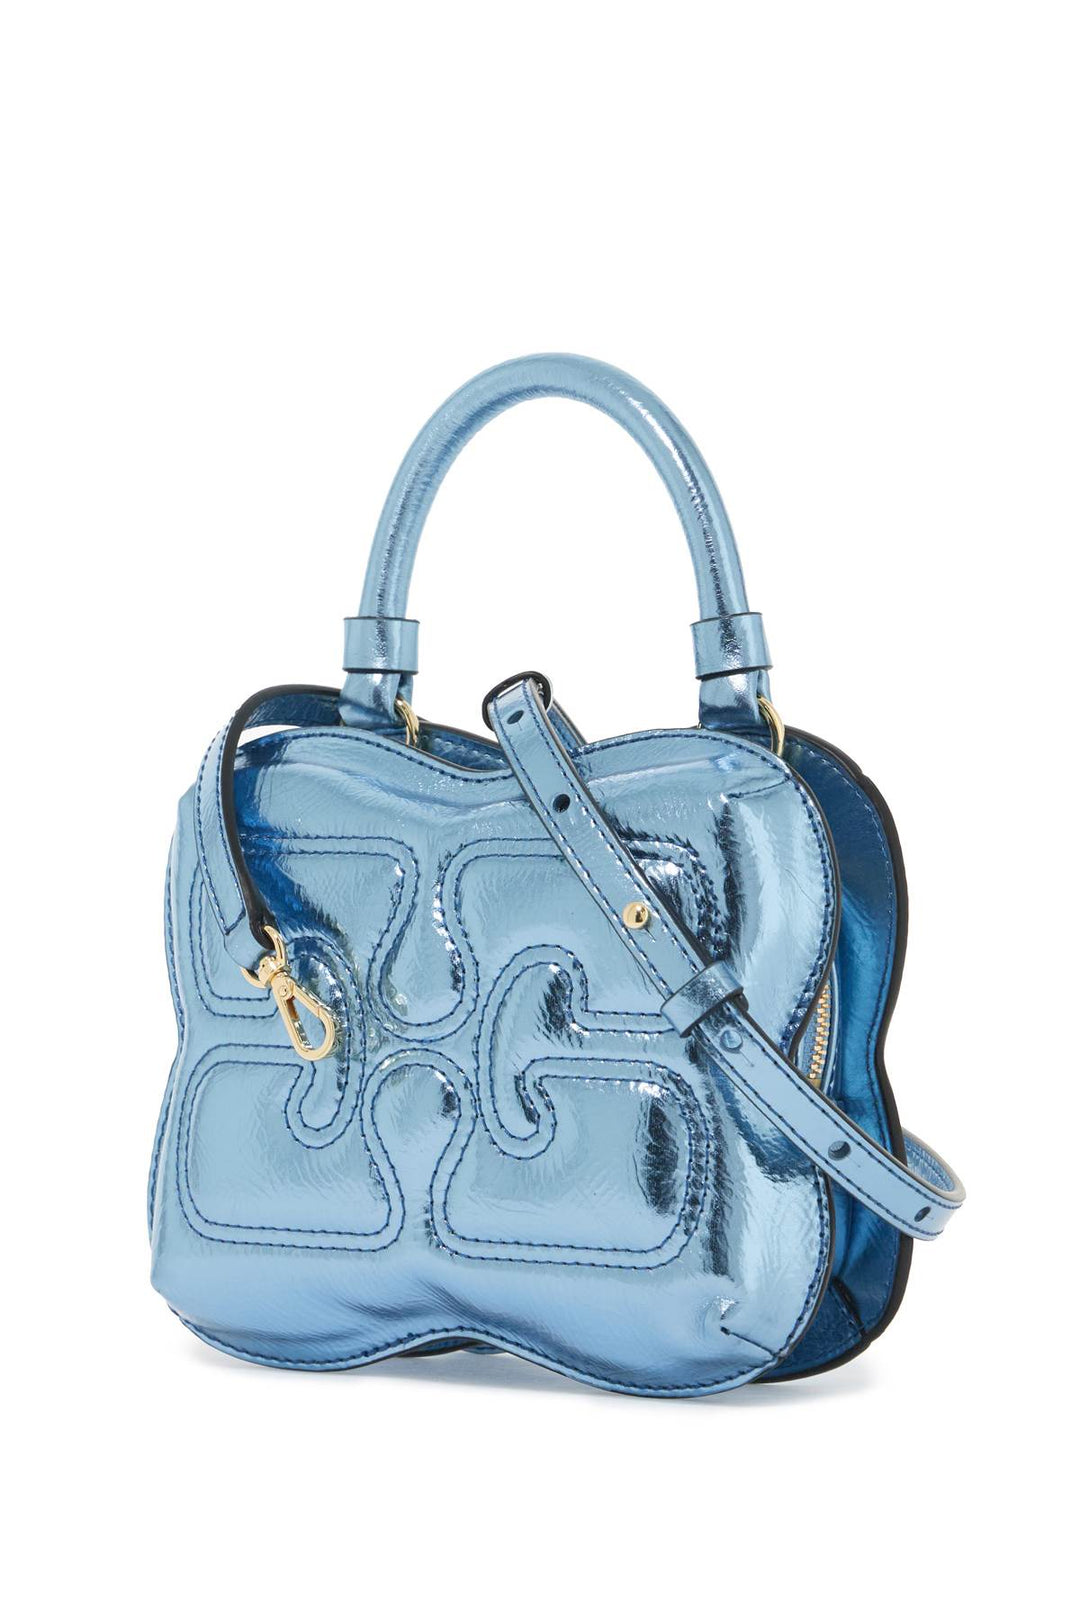 Ganni Butterfly Handbag   Blue